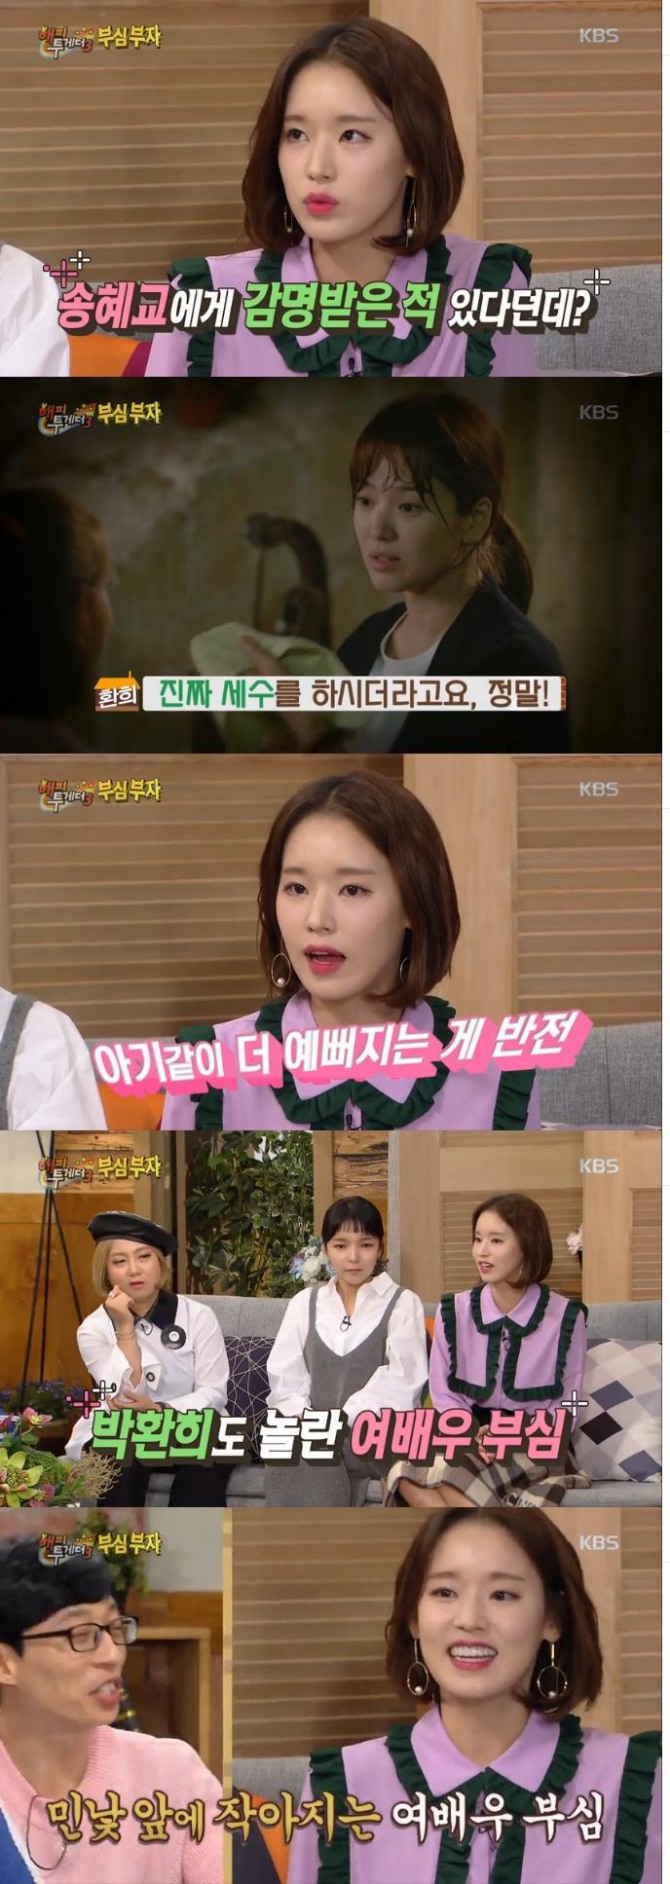 17일 방송된 KBS2 '해피투게더3'에서는 박환희가 게스트로 출연해 송혜교와 관련된 에피소드를 전했다./사진=KBS2 방송 캡처